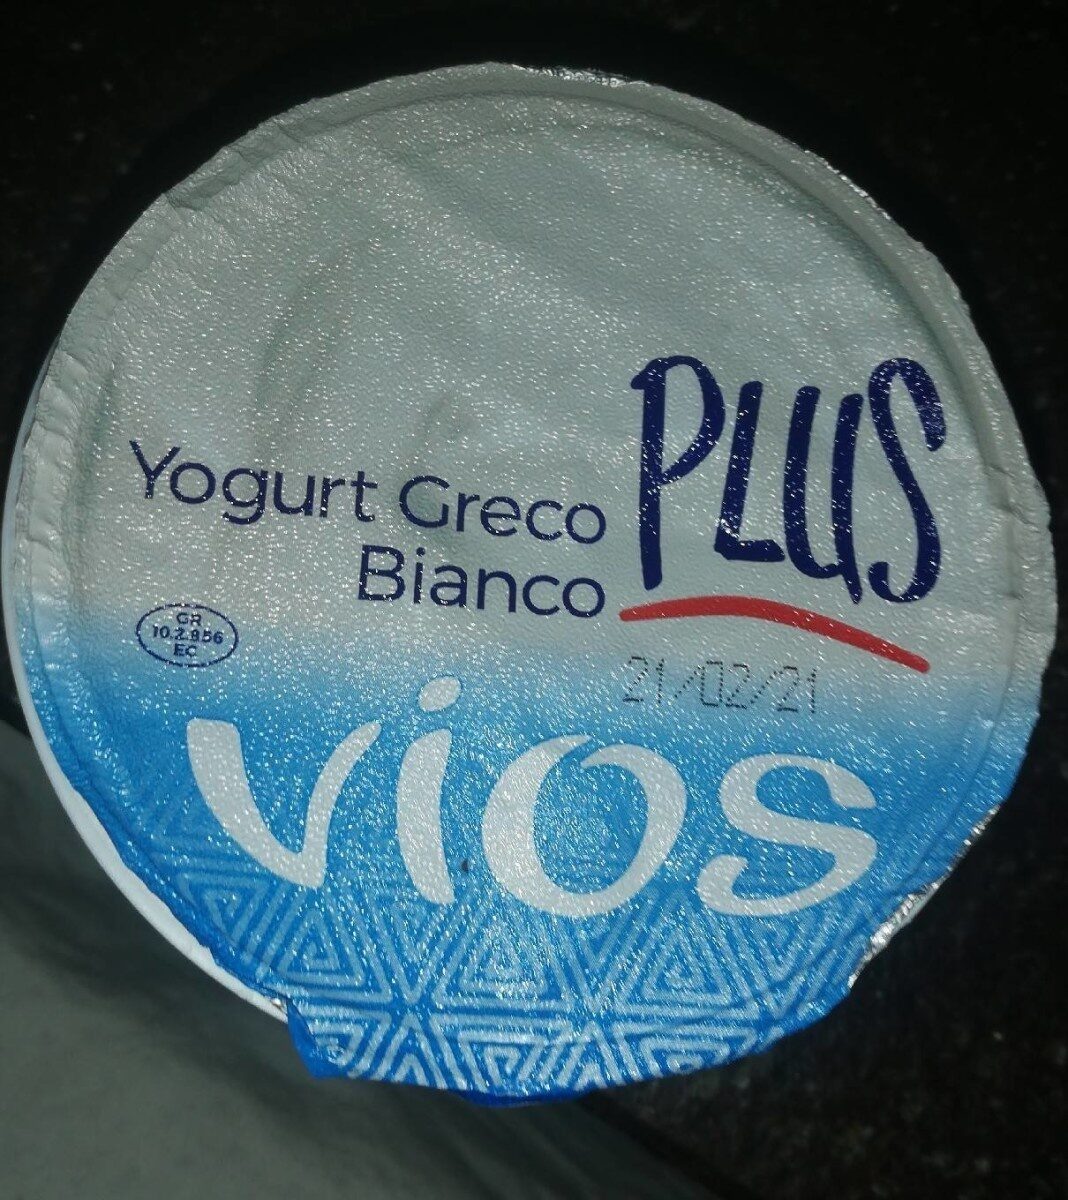 Yogurt greco - Prodotto - en